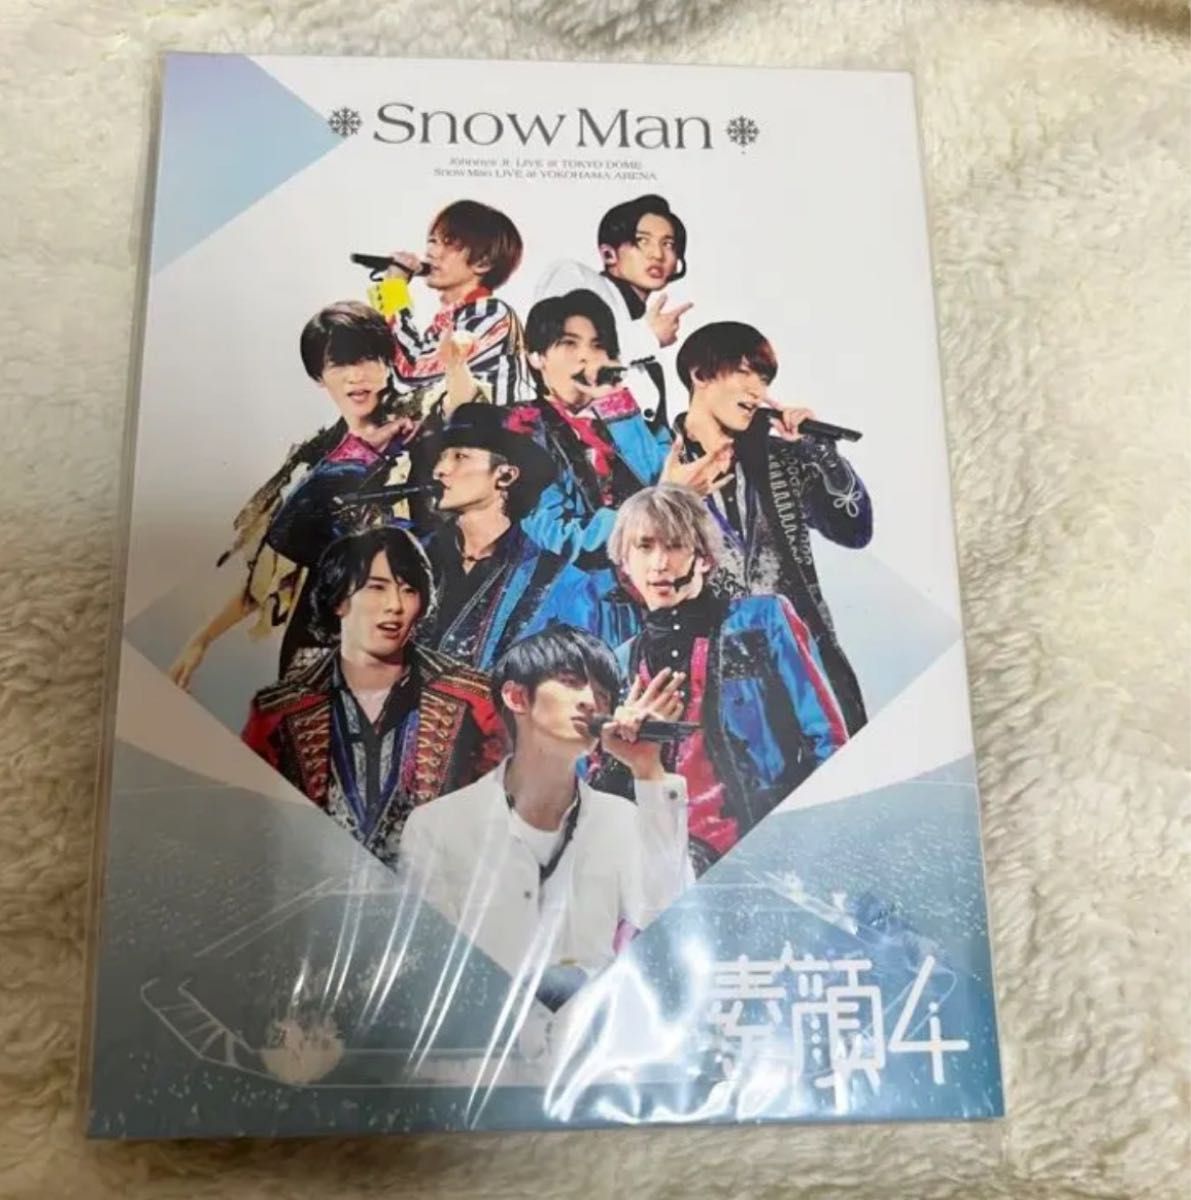 素顔4 【SnowMan盤】 DVD、映像ソフト アイドル、イメージ www